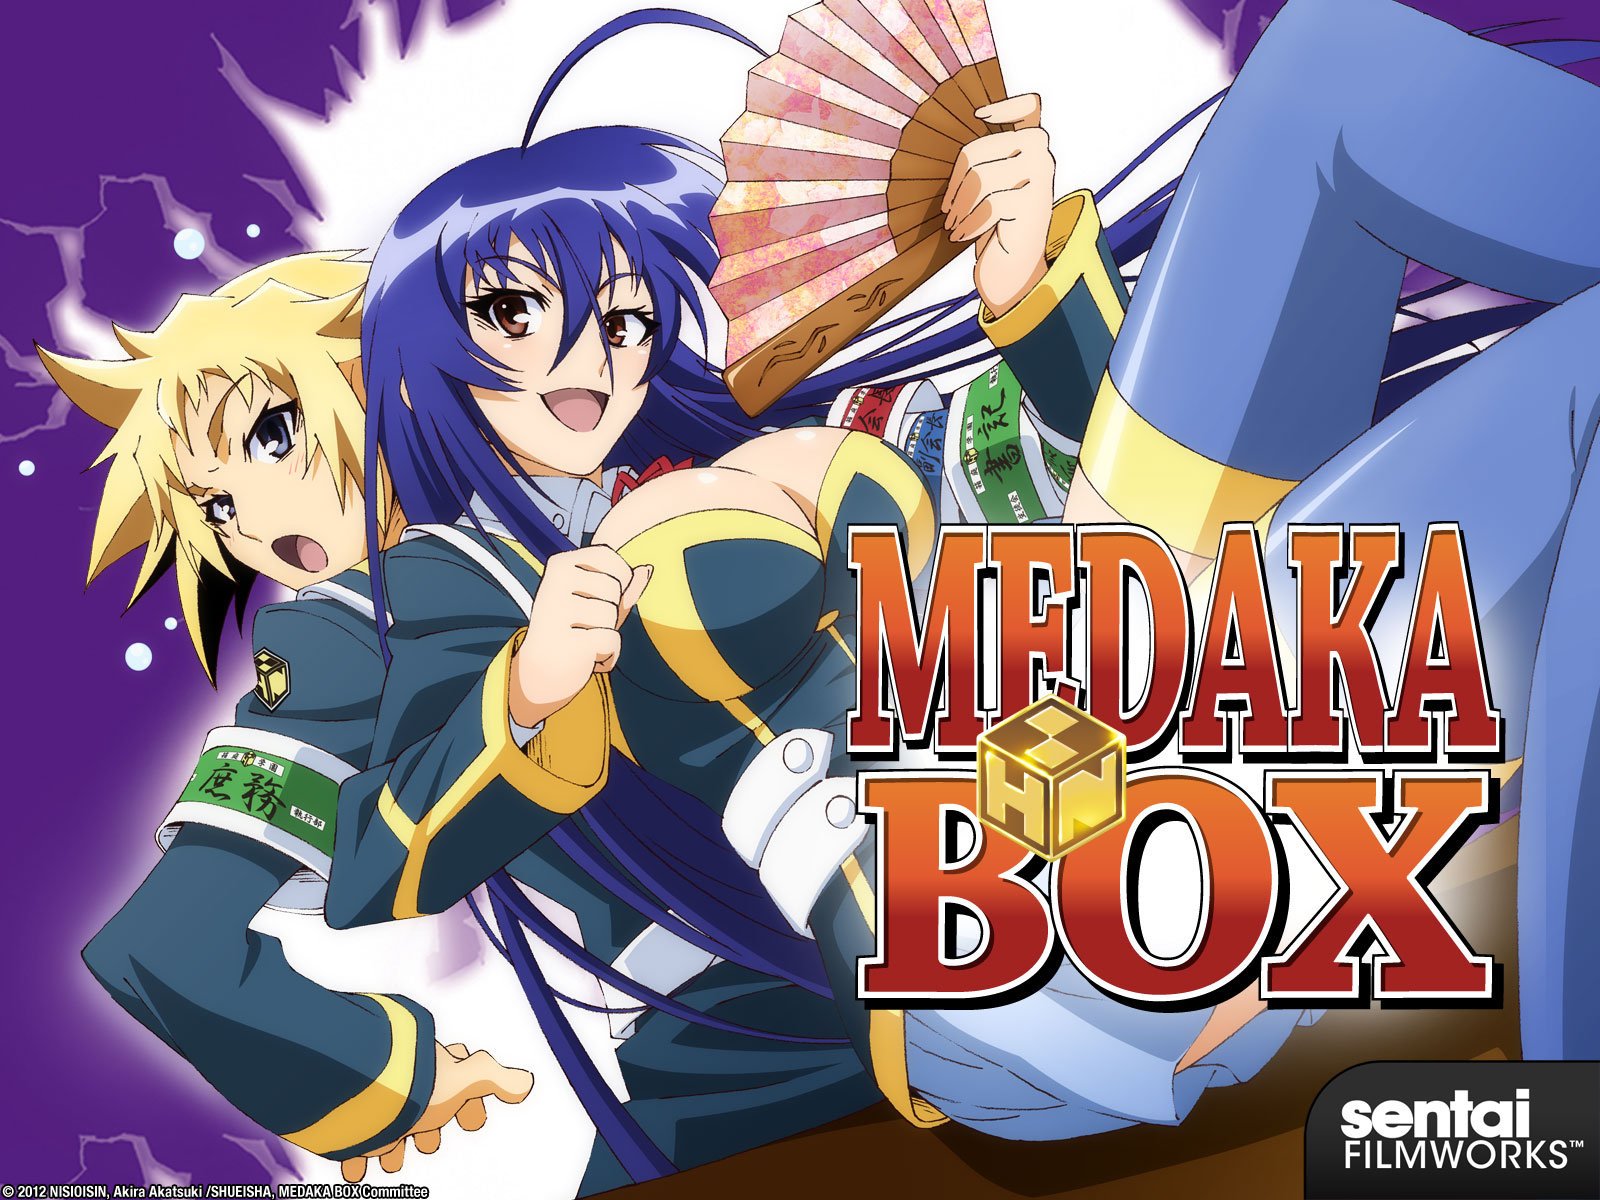 Flash Drive Medaka Box